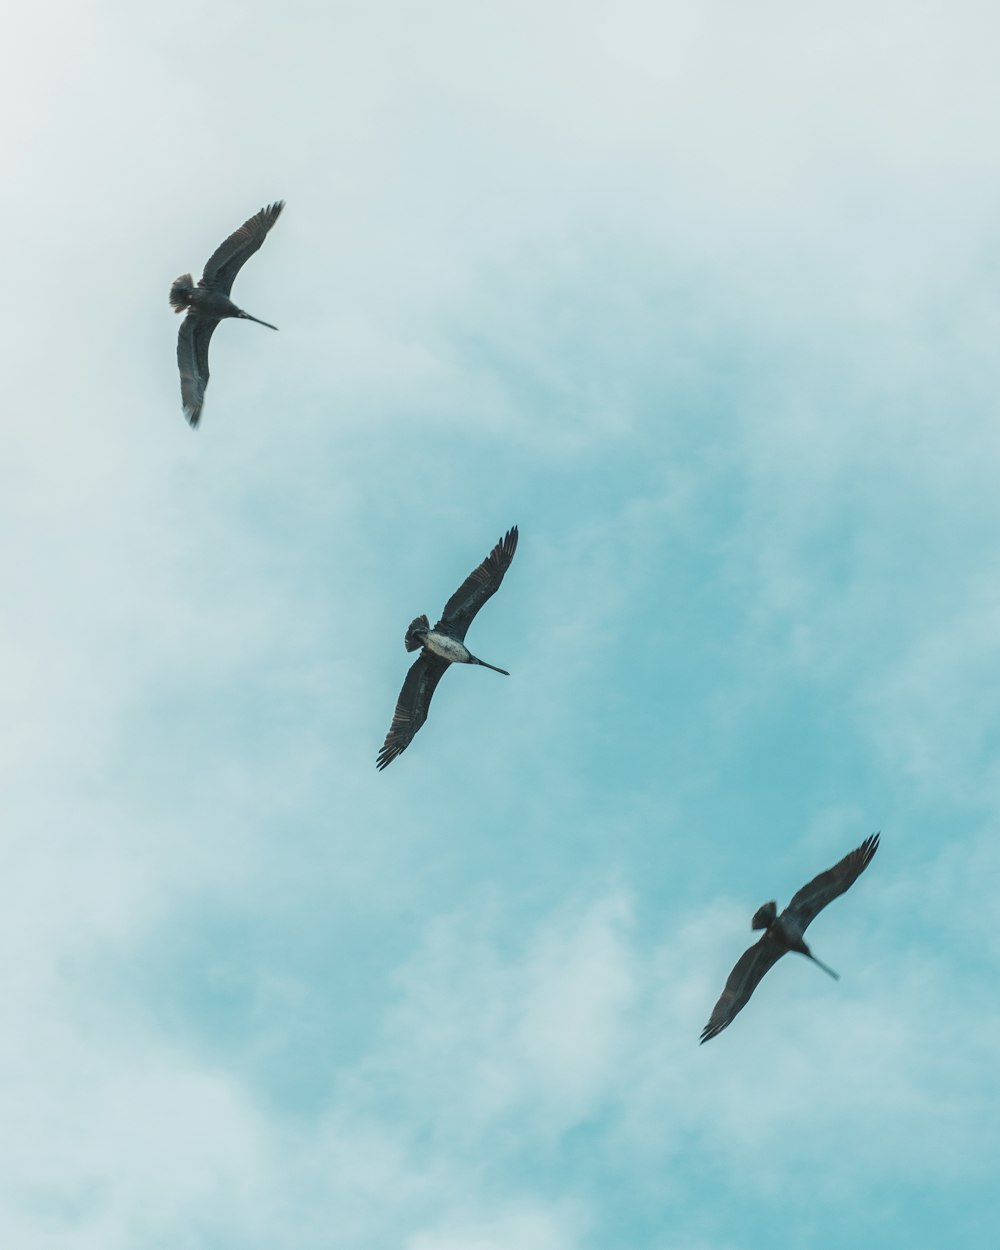 tre uccelli che volano in aria durante il giorno